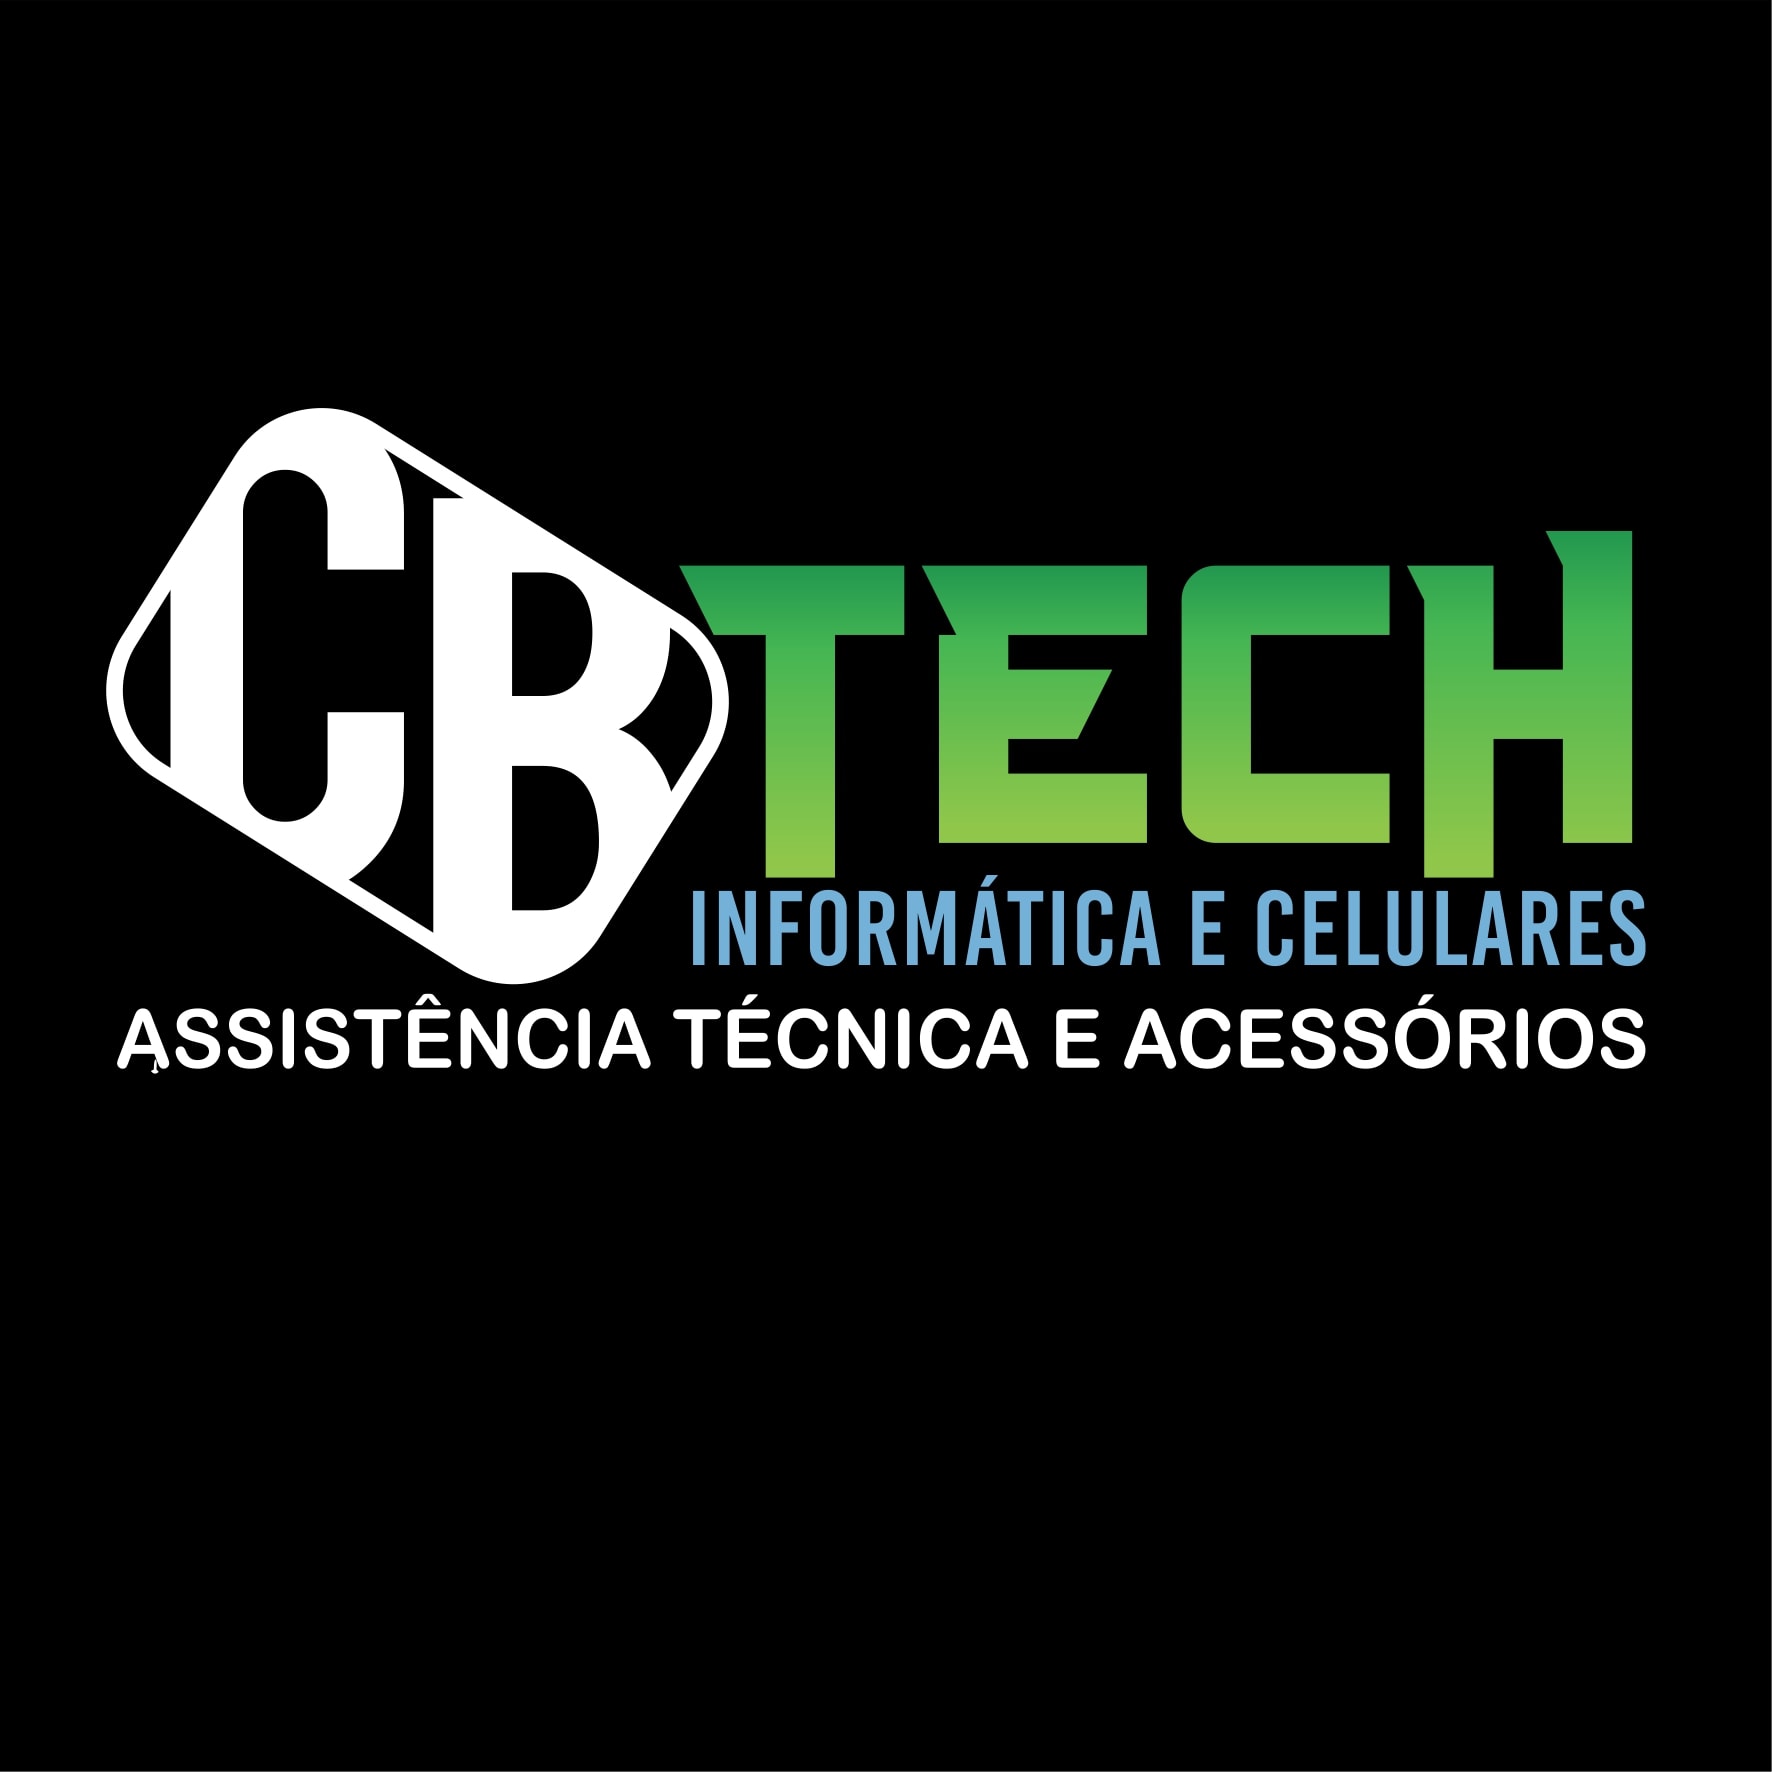 CB Tech - Informática e Celulares